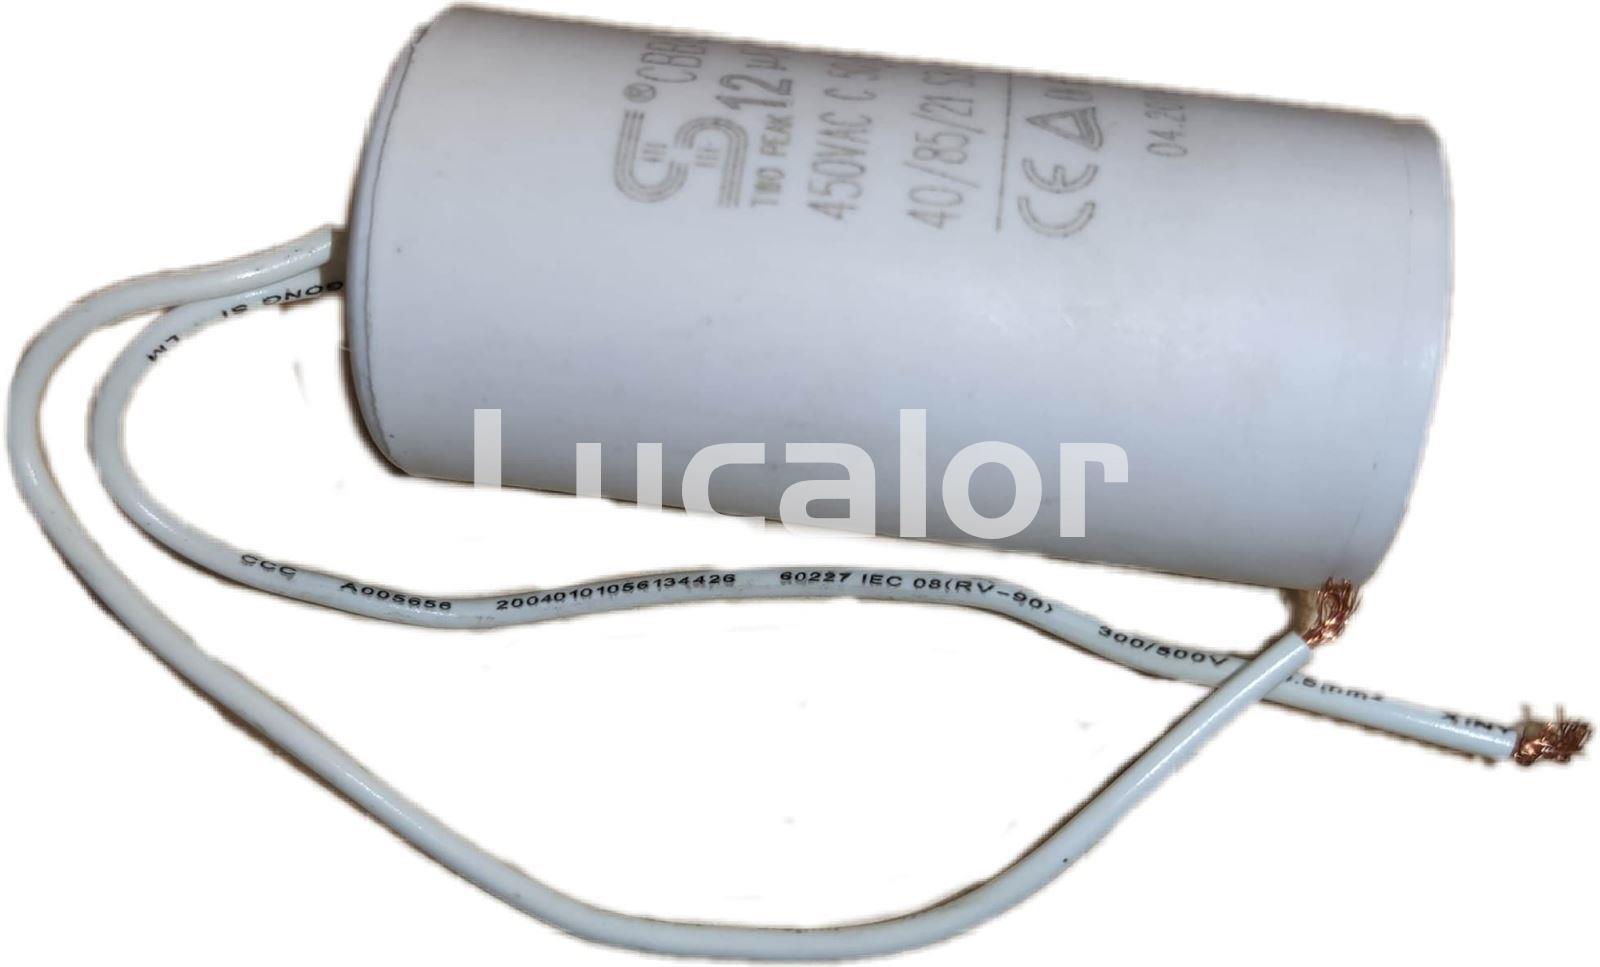 Condensador 12 µF  bombas sparta depuradoras gre  FS 500 y 550 - Imagen 1